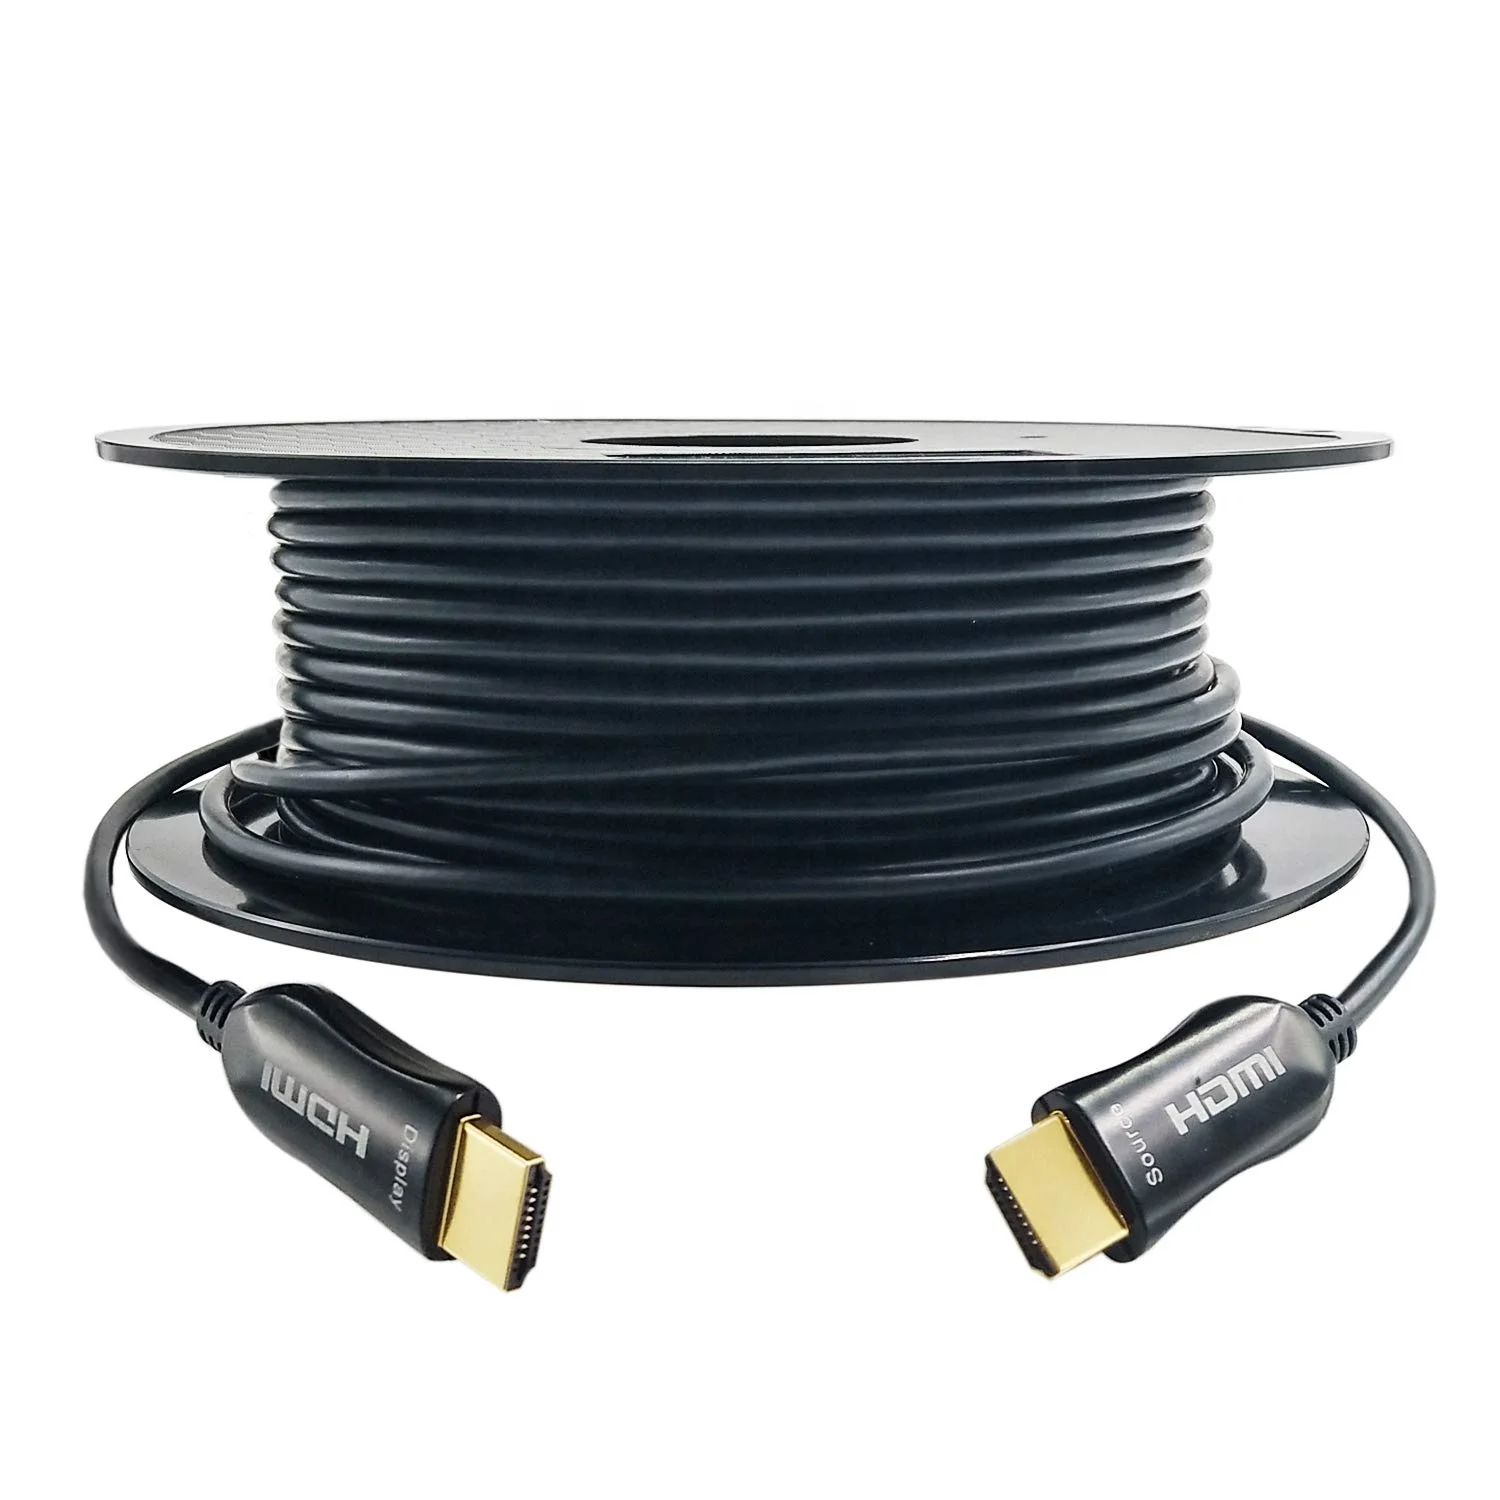 
10m 15m 20m 30m 50m Gold 4k 2.0 3D 18Gbps 60hz AOC fibers HDMI Cable 